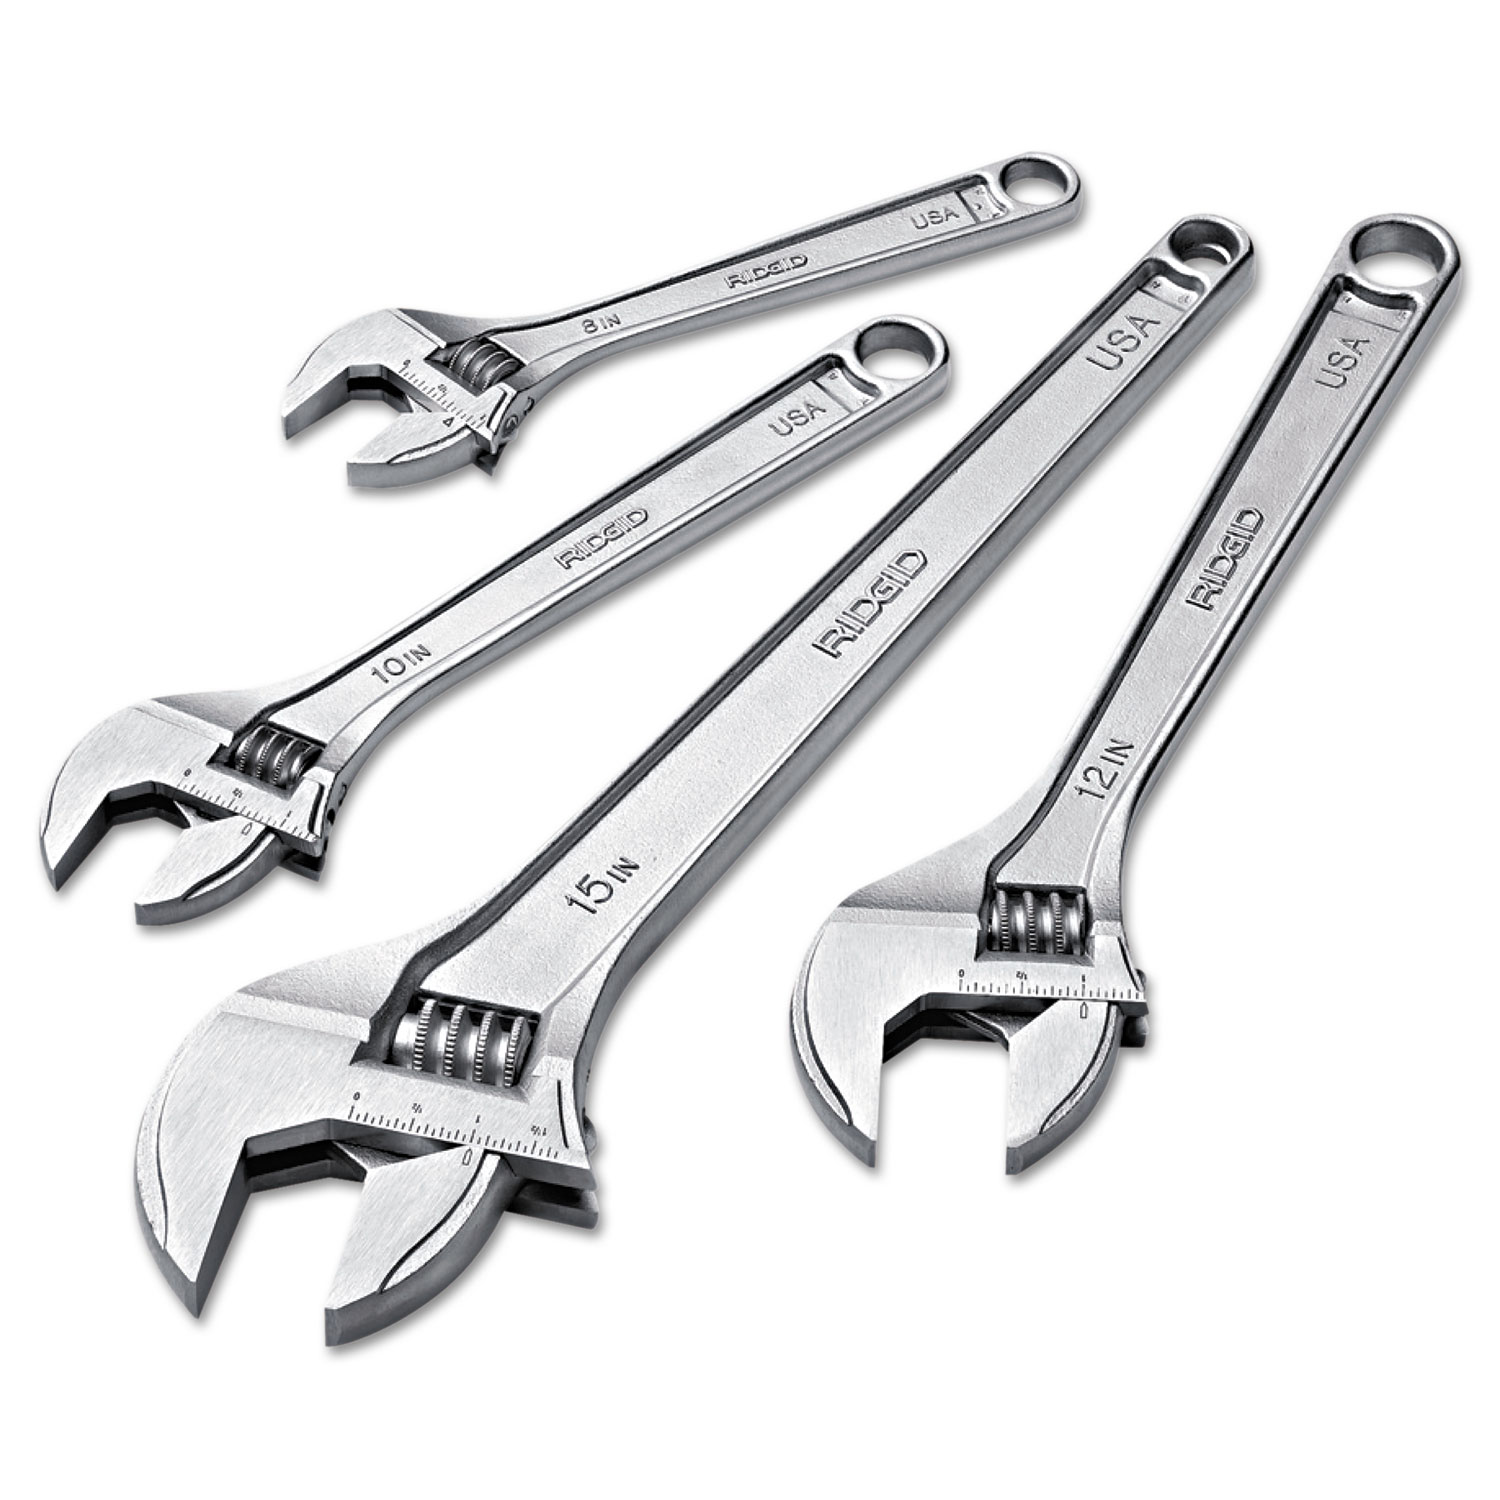 RIDGID Adjustable Wrench, 8 Long, 7/8 Jaw Capacity, Chrome Finish